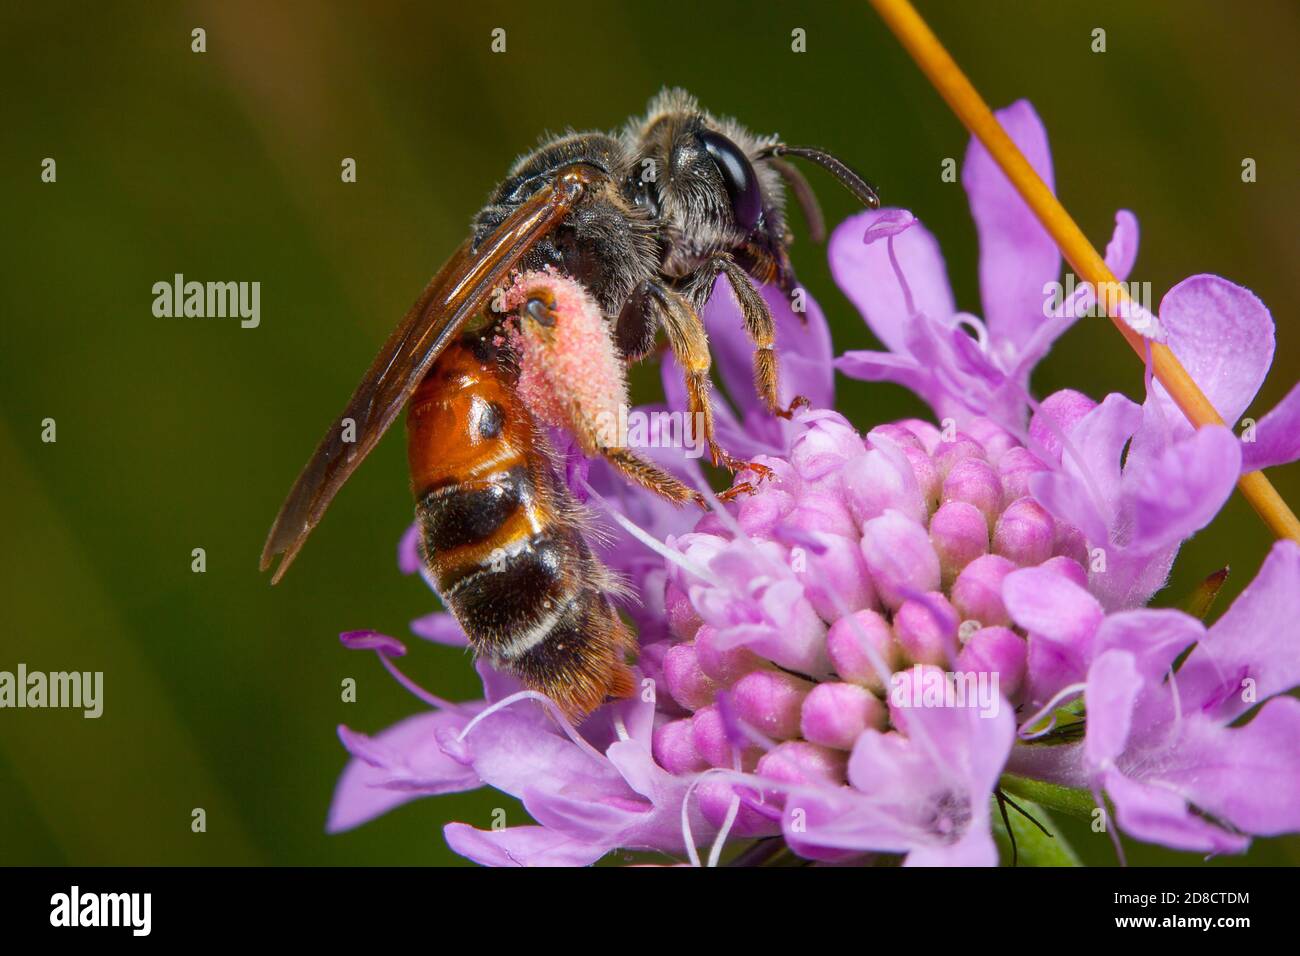 Grande abeille minière de Scabious (Andrena hattfiana), se trouve sur un scabieux, Allemagne Banque D'Images